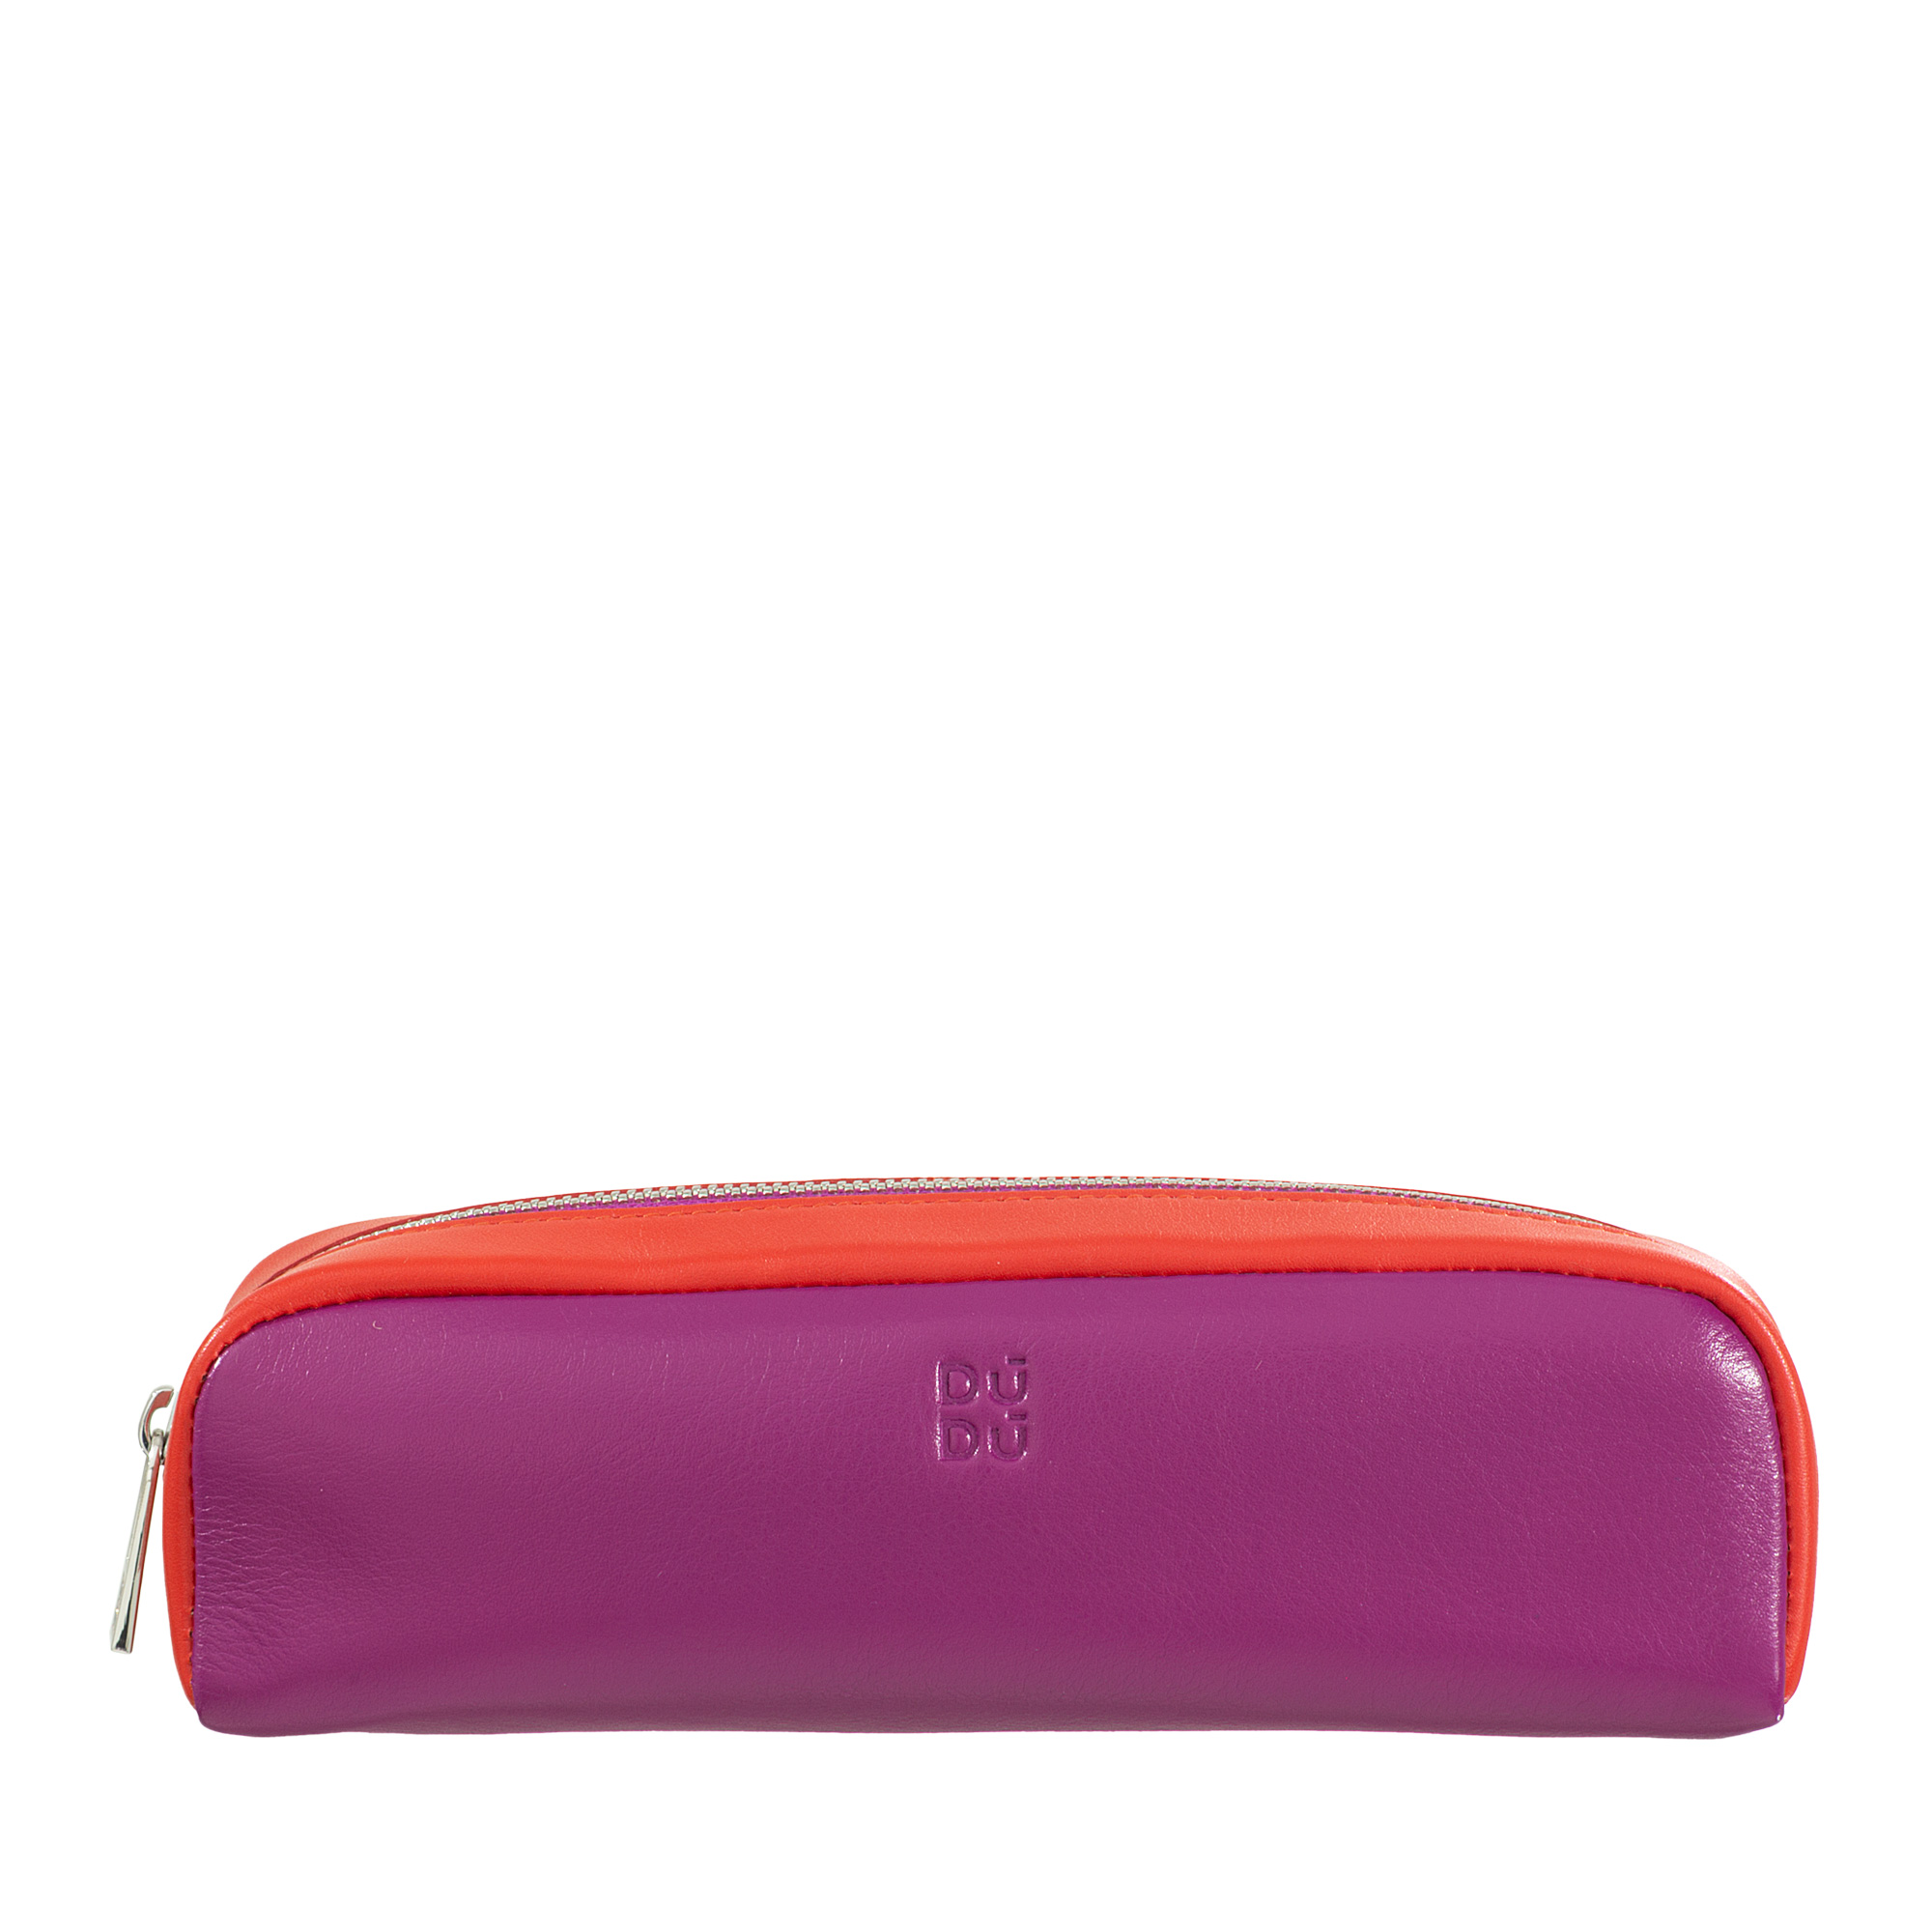 Colorful - Pencil case - Fucsia